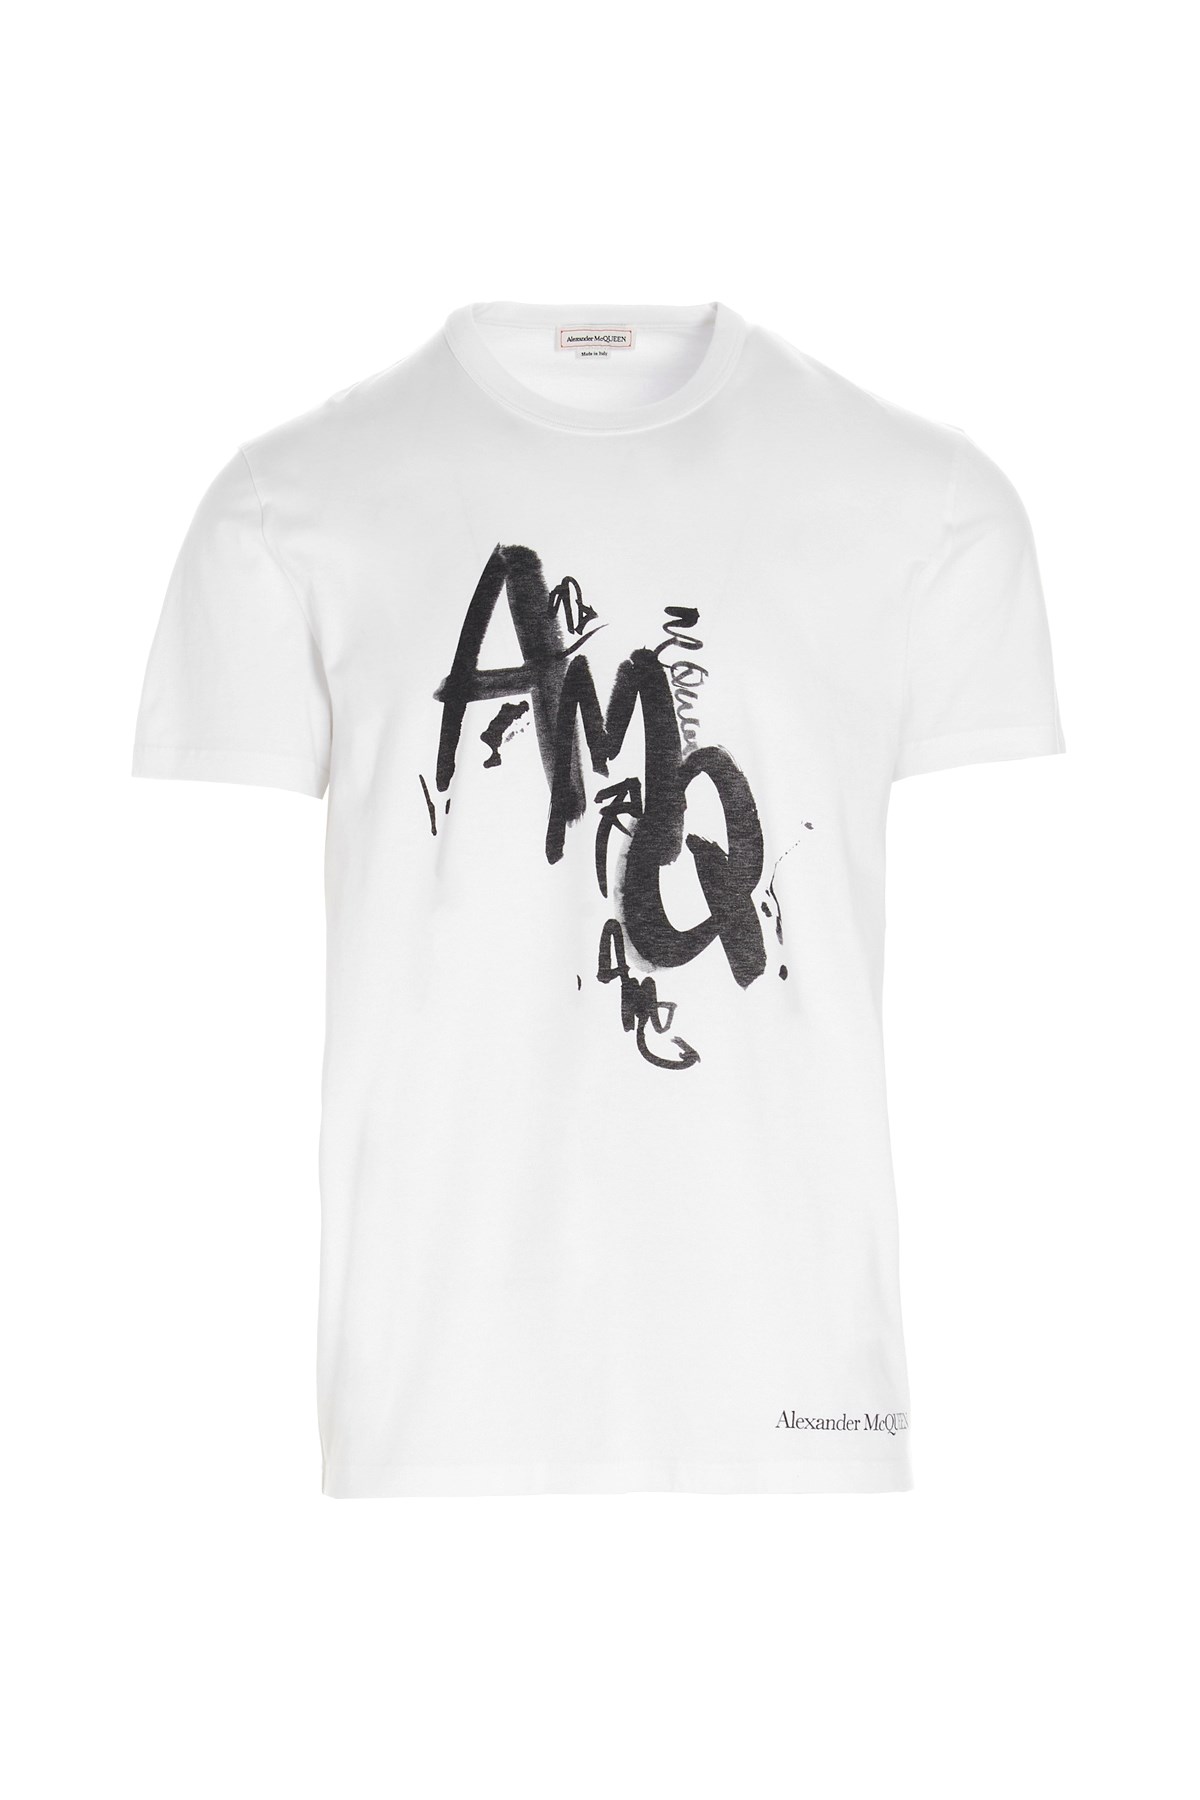 ALEXANDER MCQUEEN 'Painted Amq' T-Shirt